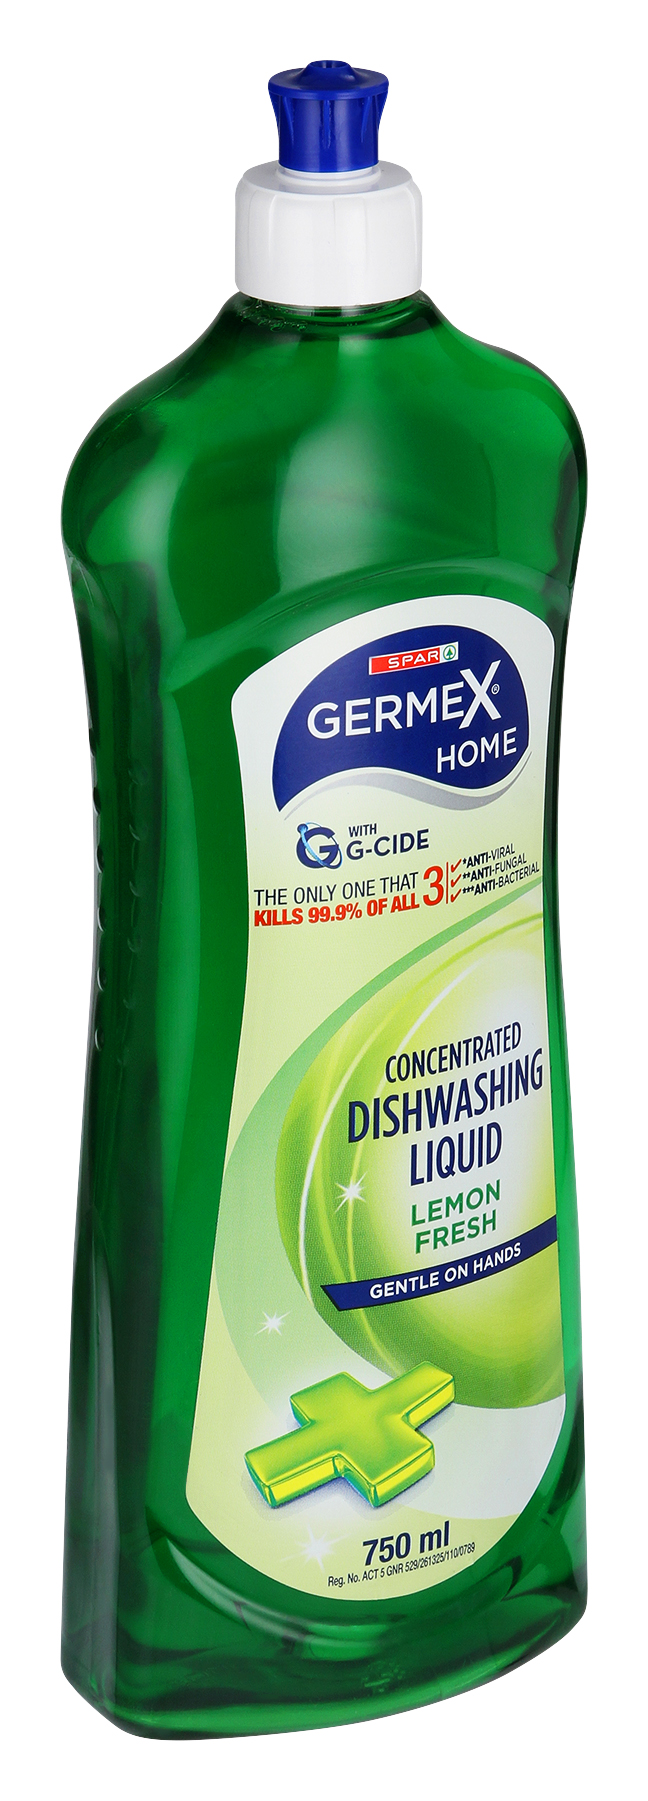 germex dishwashing liquid lemon fresh